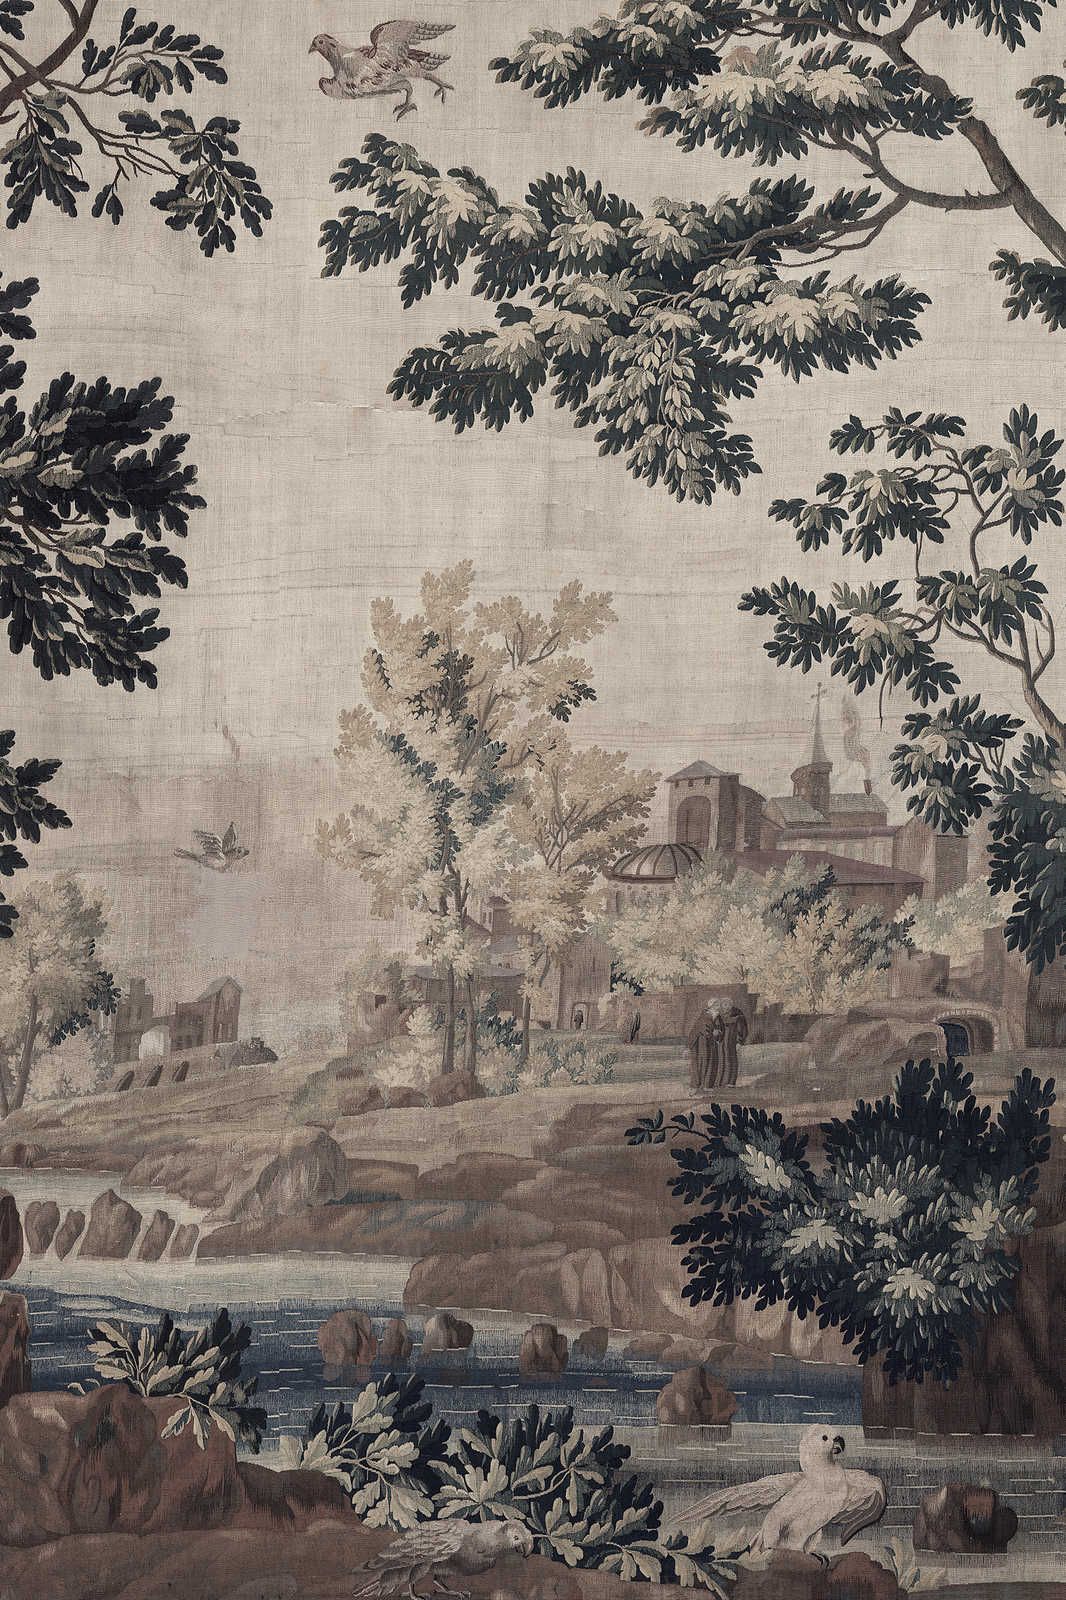             Gobelin Gallery 1 - Landschaft Leinwandbild historischer Wandteppich – 0,90 m x 0,60 m
        